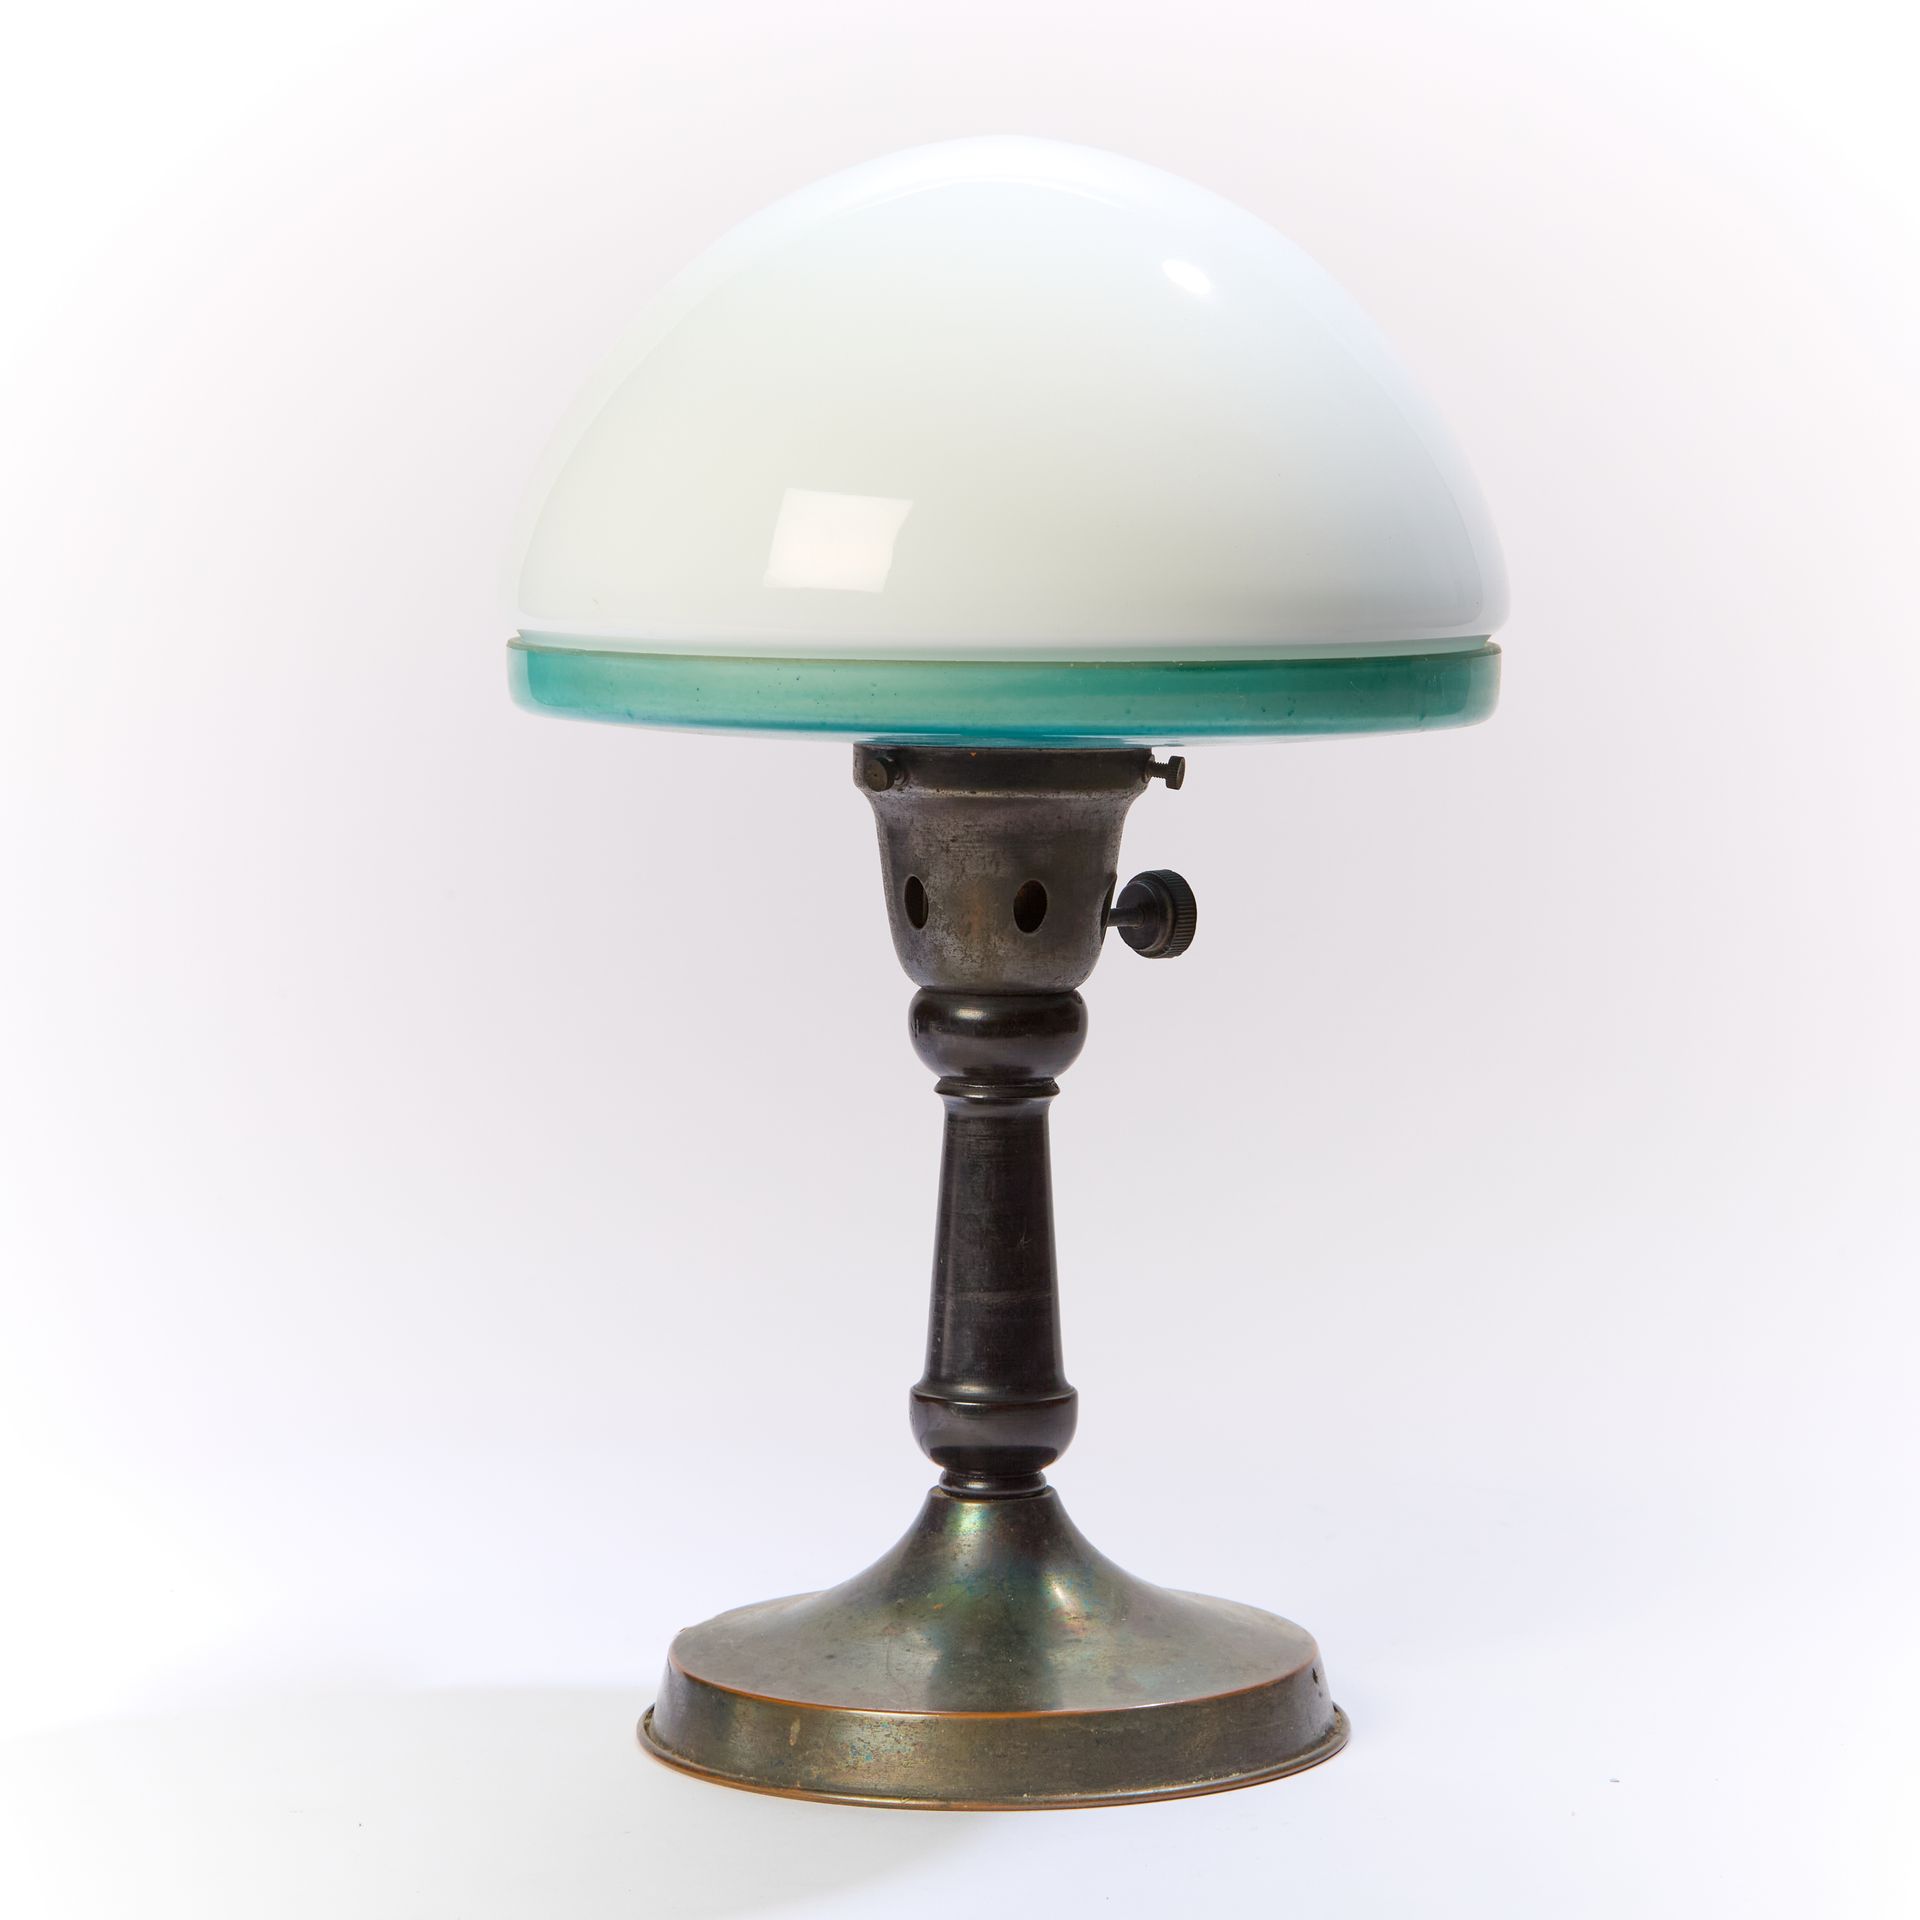 Null 伊尔林（20 世纪）。
金属灯，圆形底座上有圆柱形灯轴，半球形灯罩由白色乳白玻璃和蓝色灯碗组成。
已签名。
约 1930 年。
高度高度：35 厘米